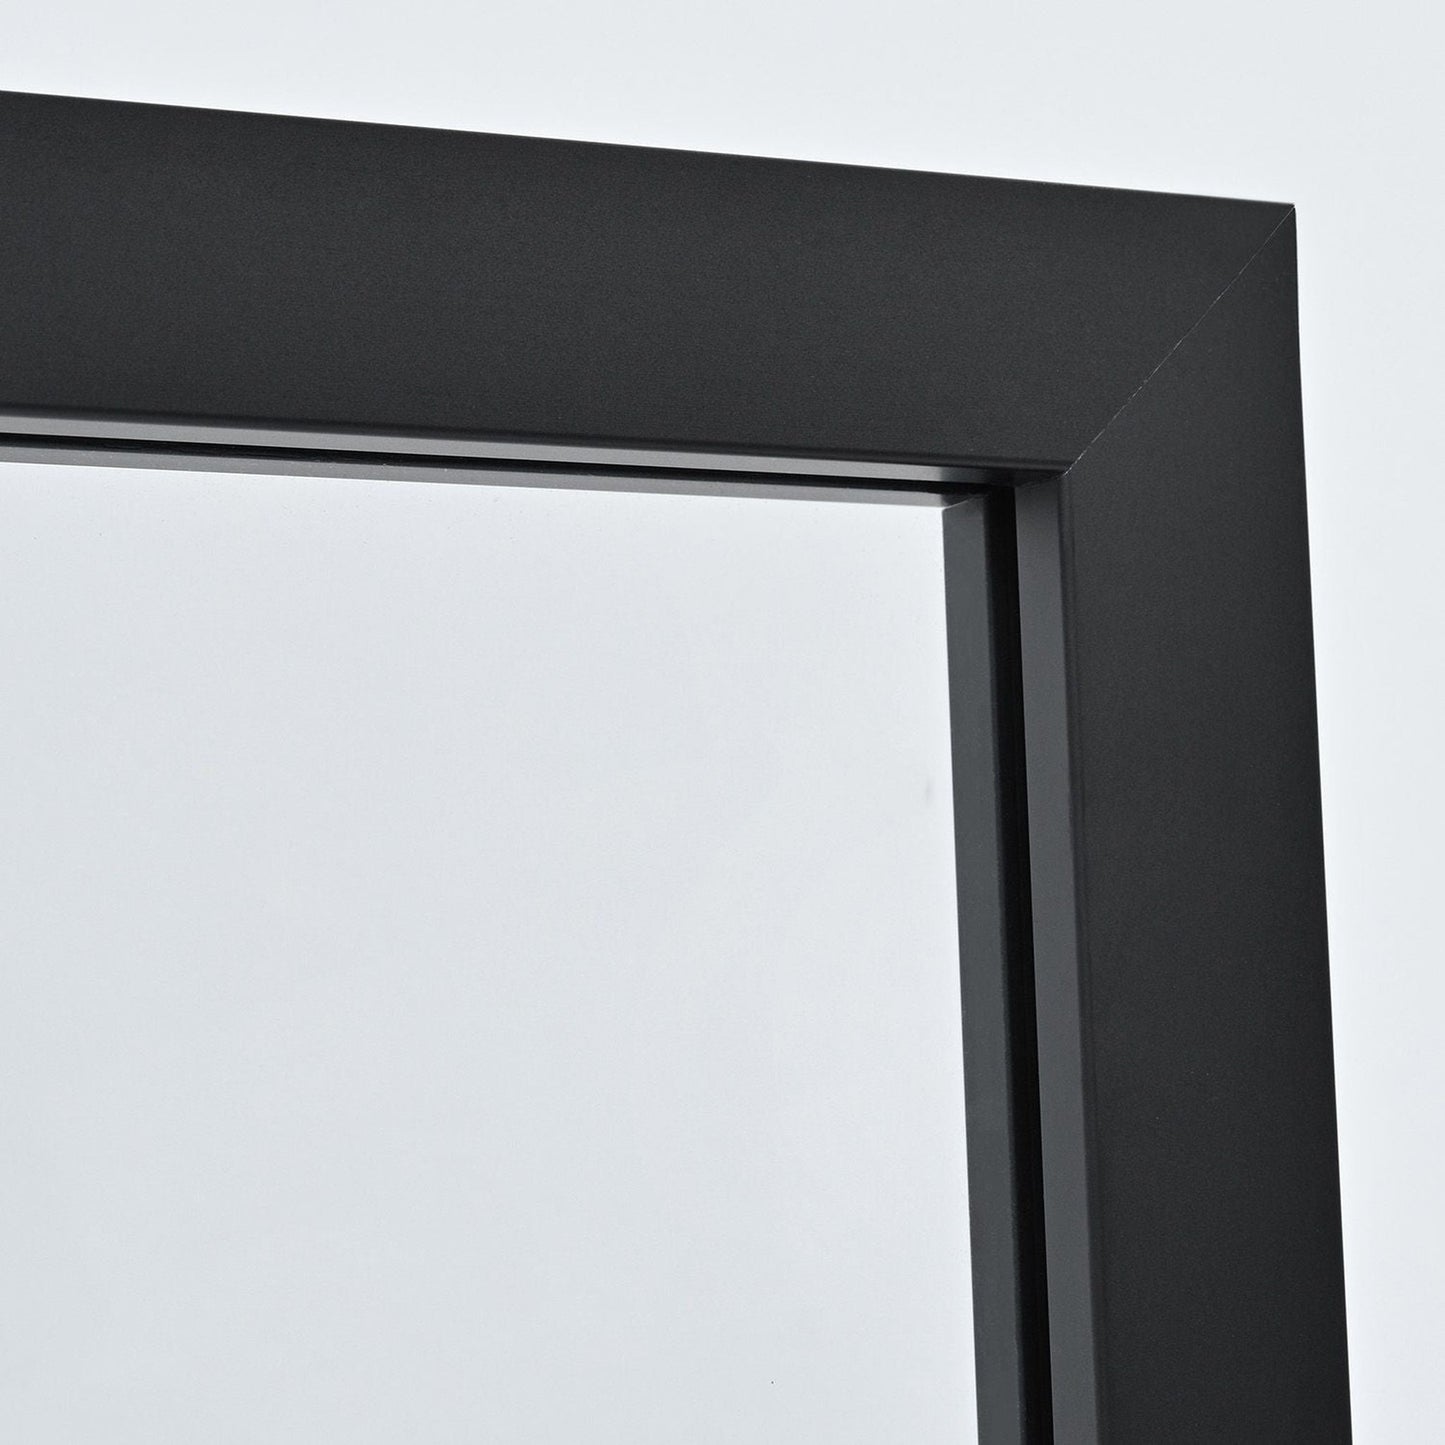 Vinnova Arcos 34" x 74" Framed Fixed Glass Panel in Matte Black Finish